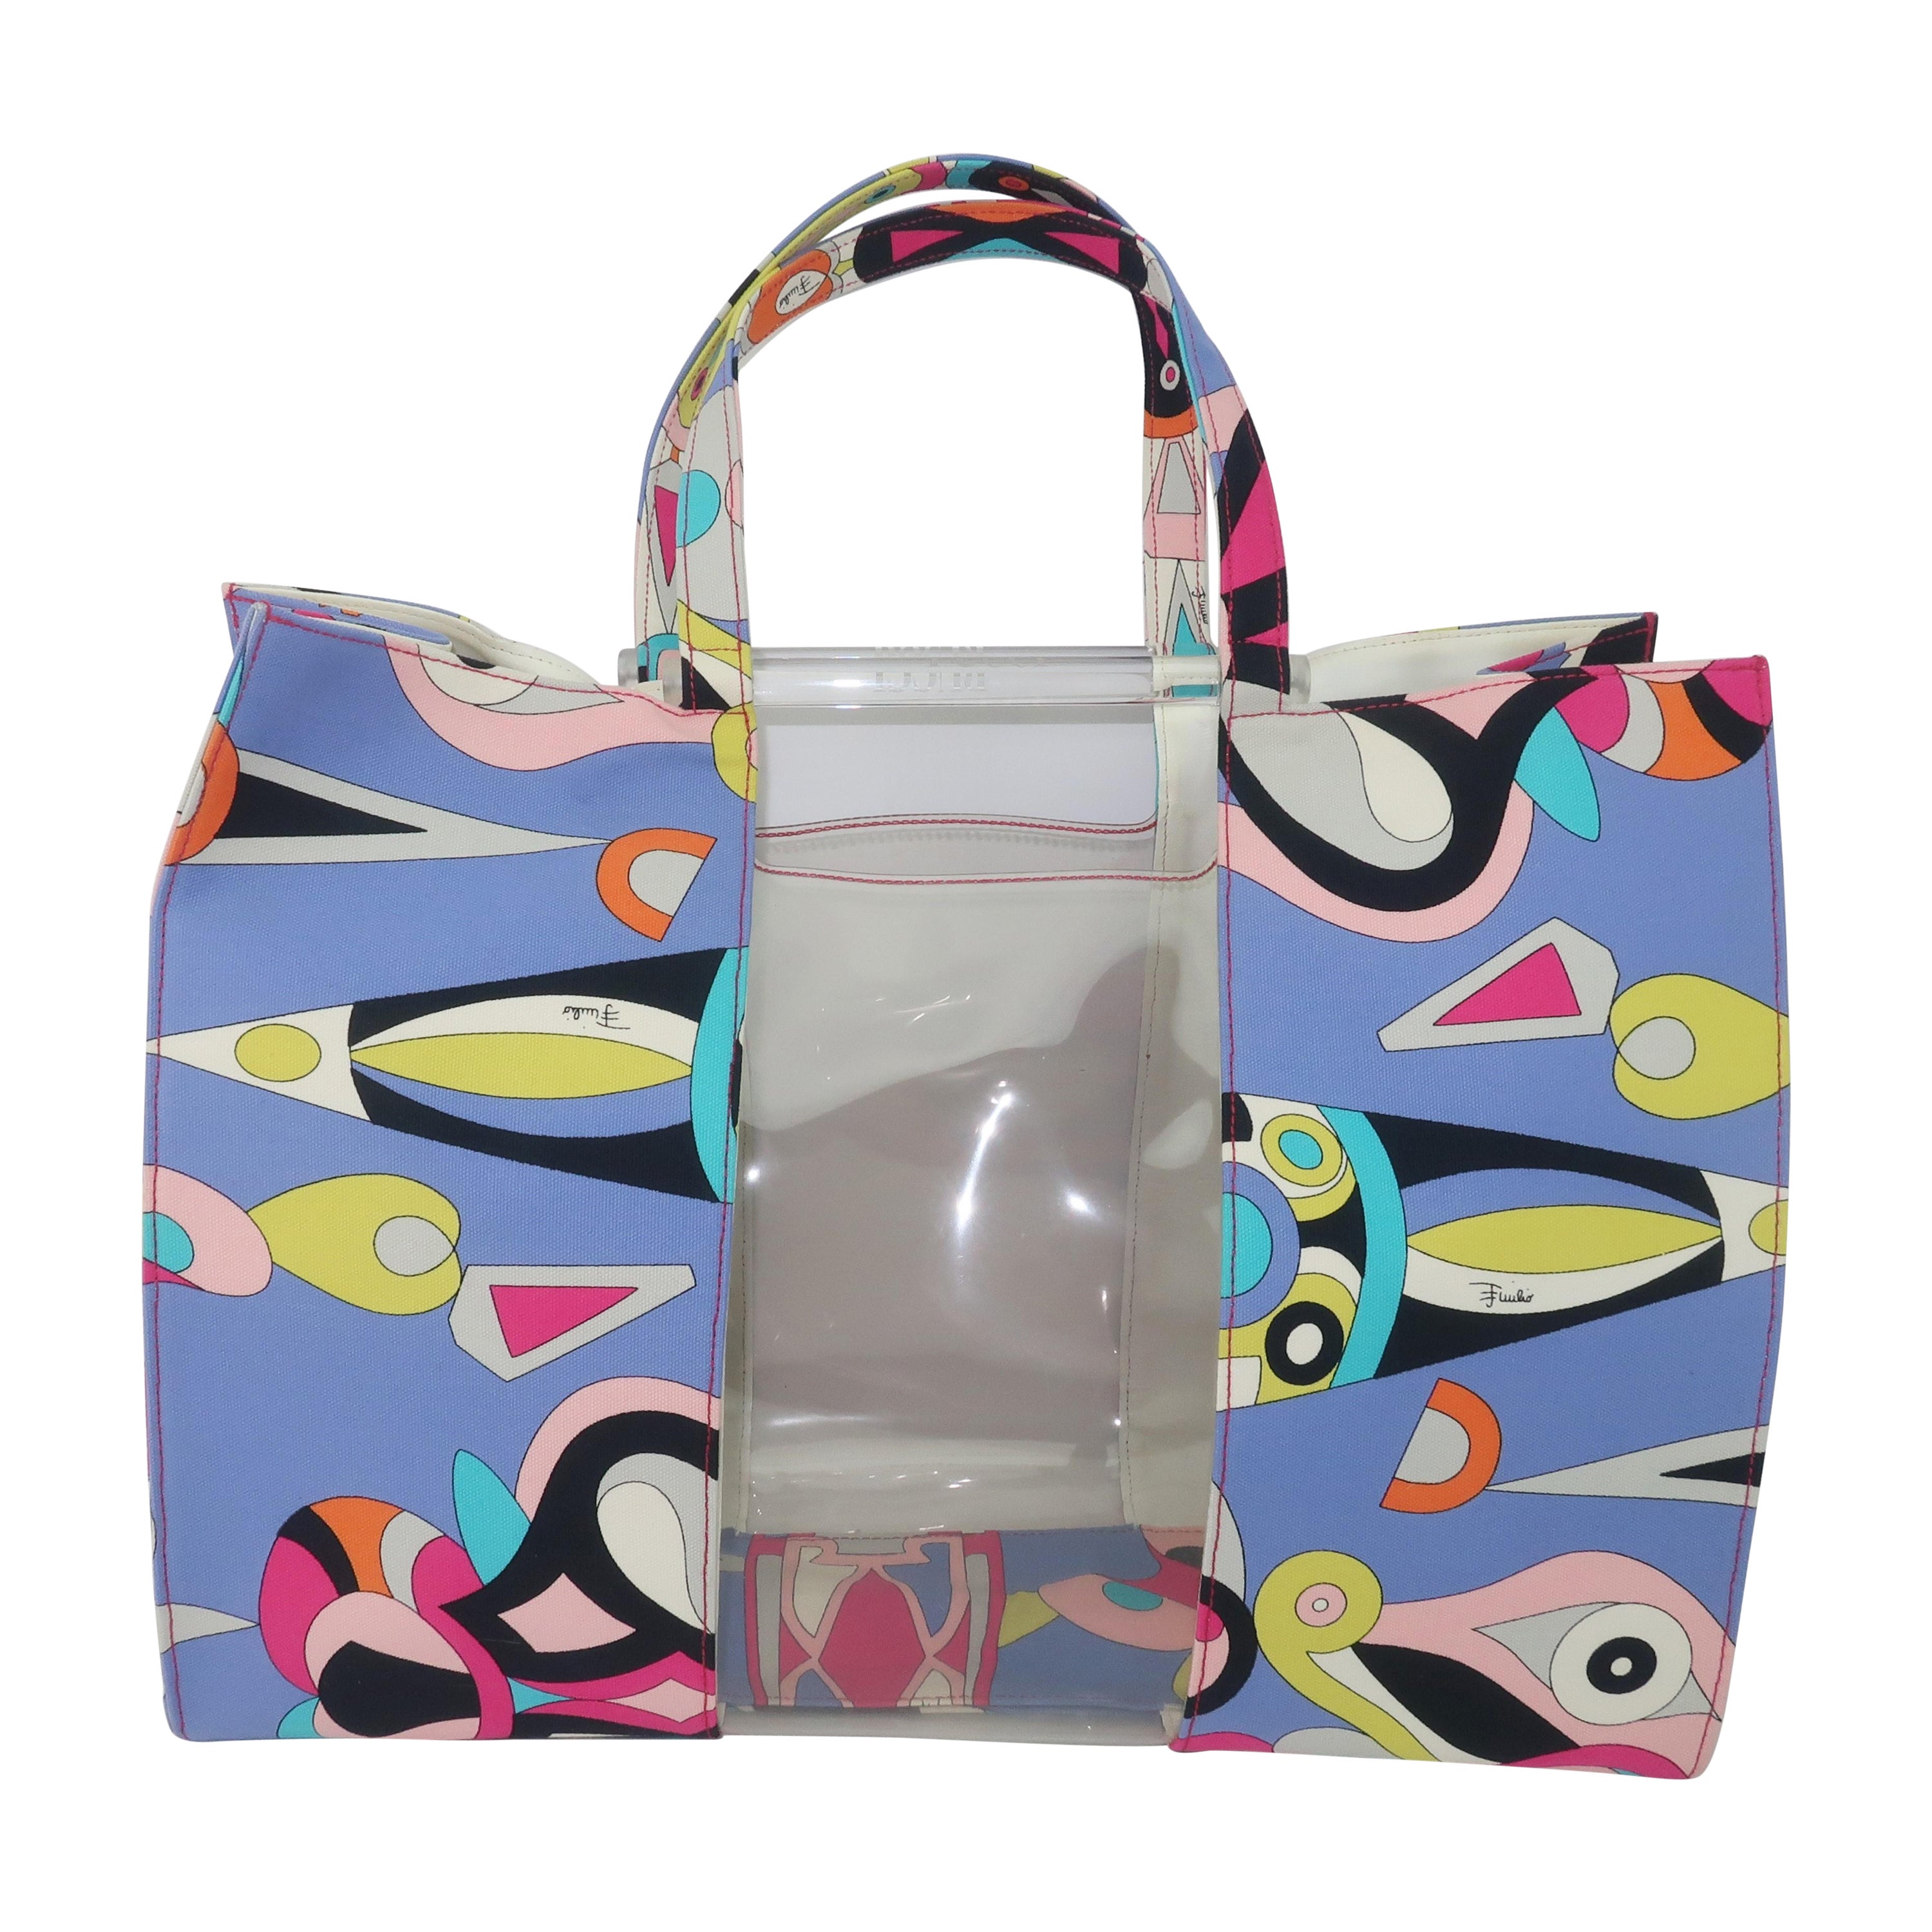 Emilio Pucci Canvas & Lucite Tote Handbag